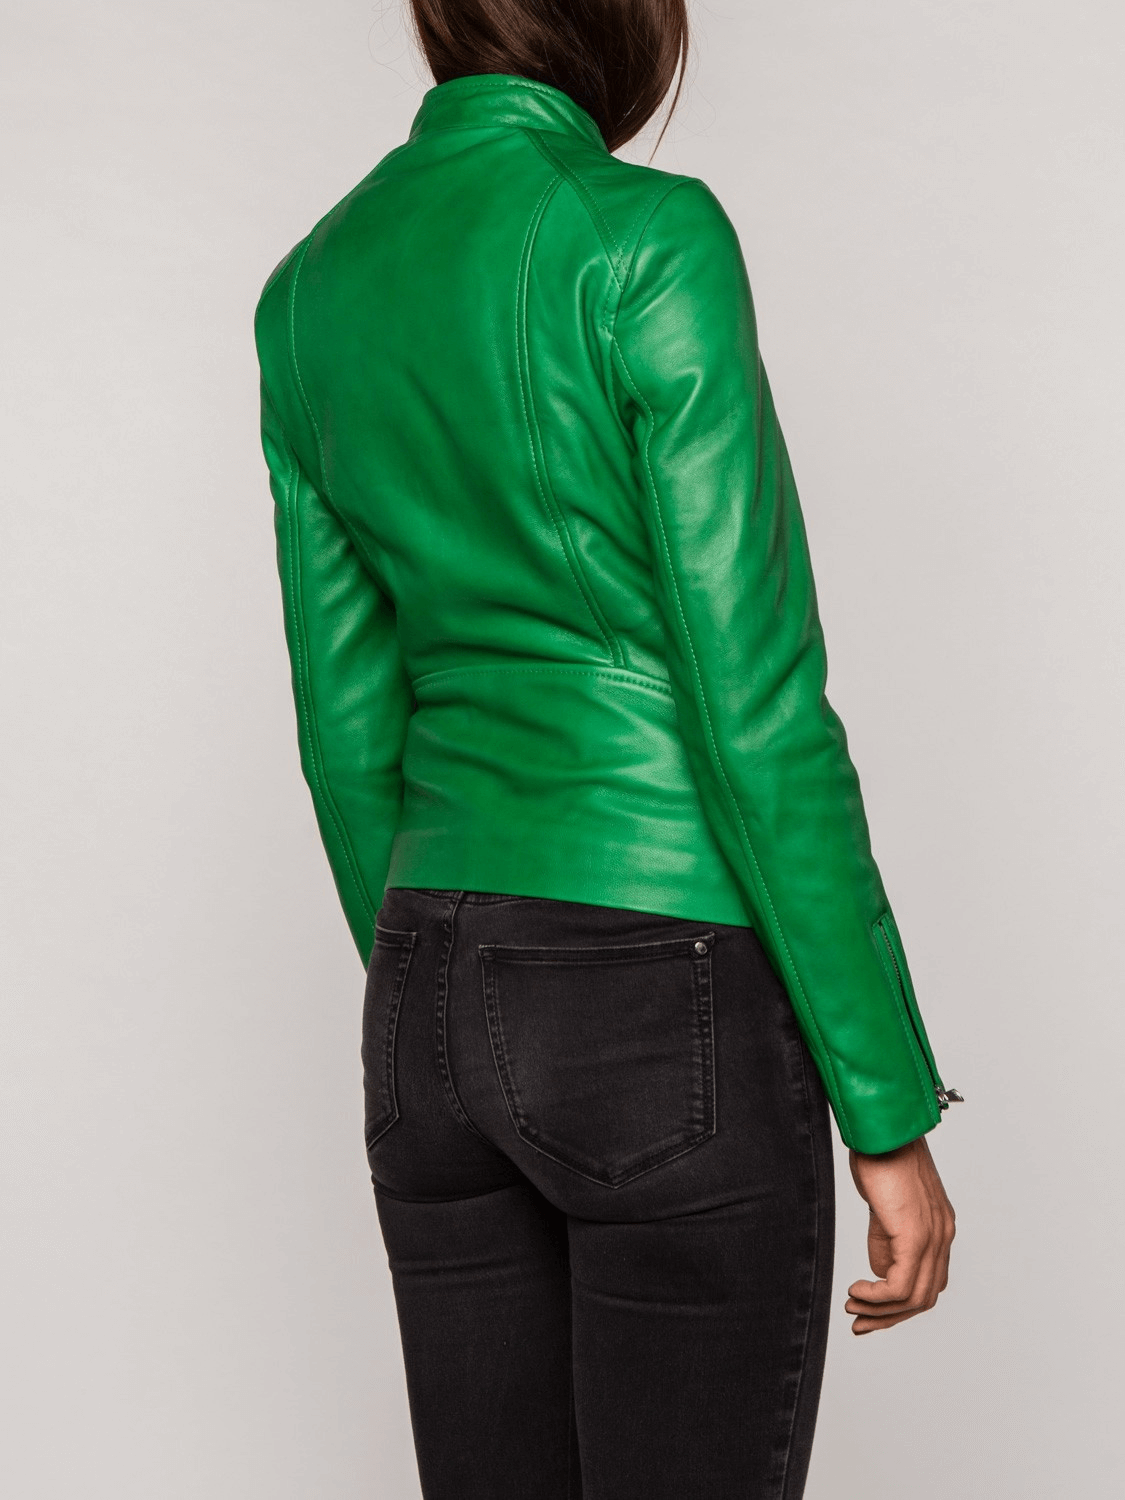 Harper Green Leather Jacket